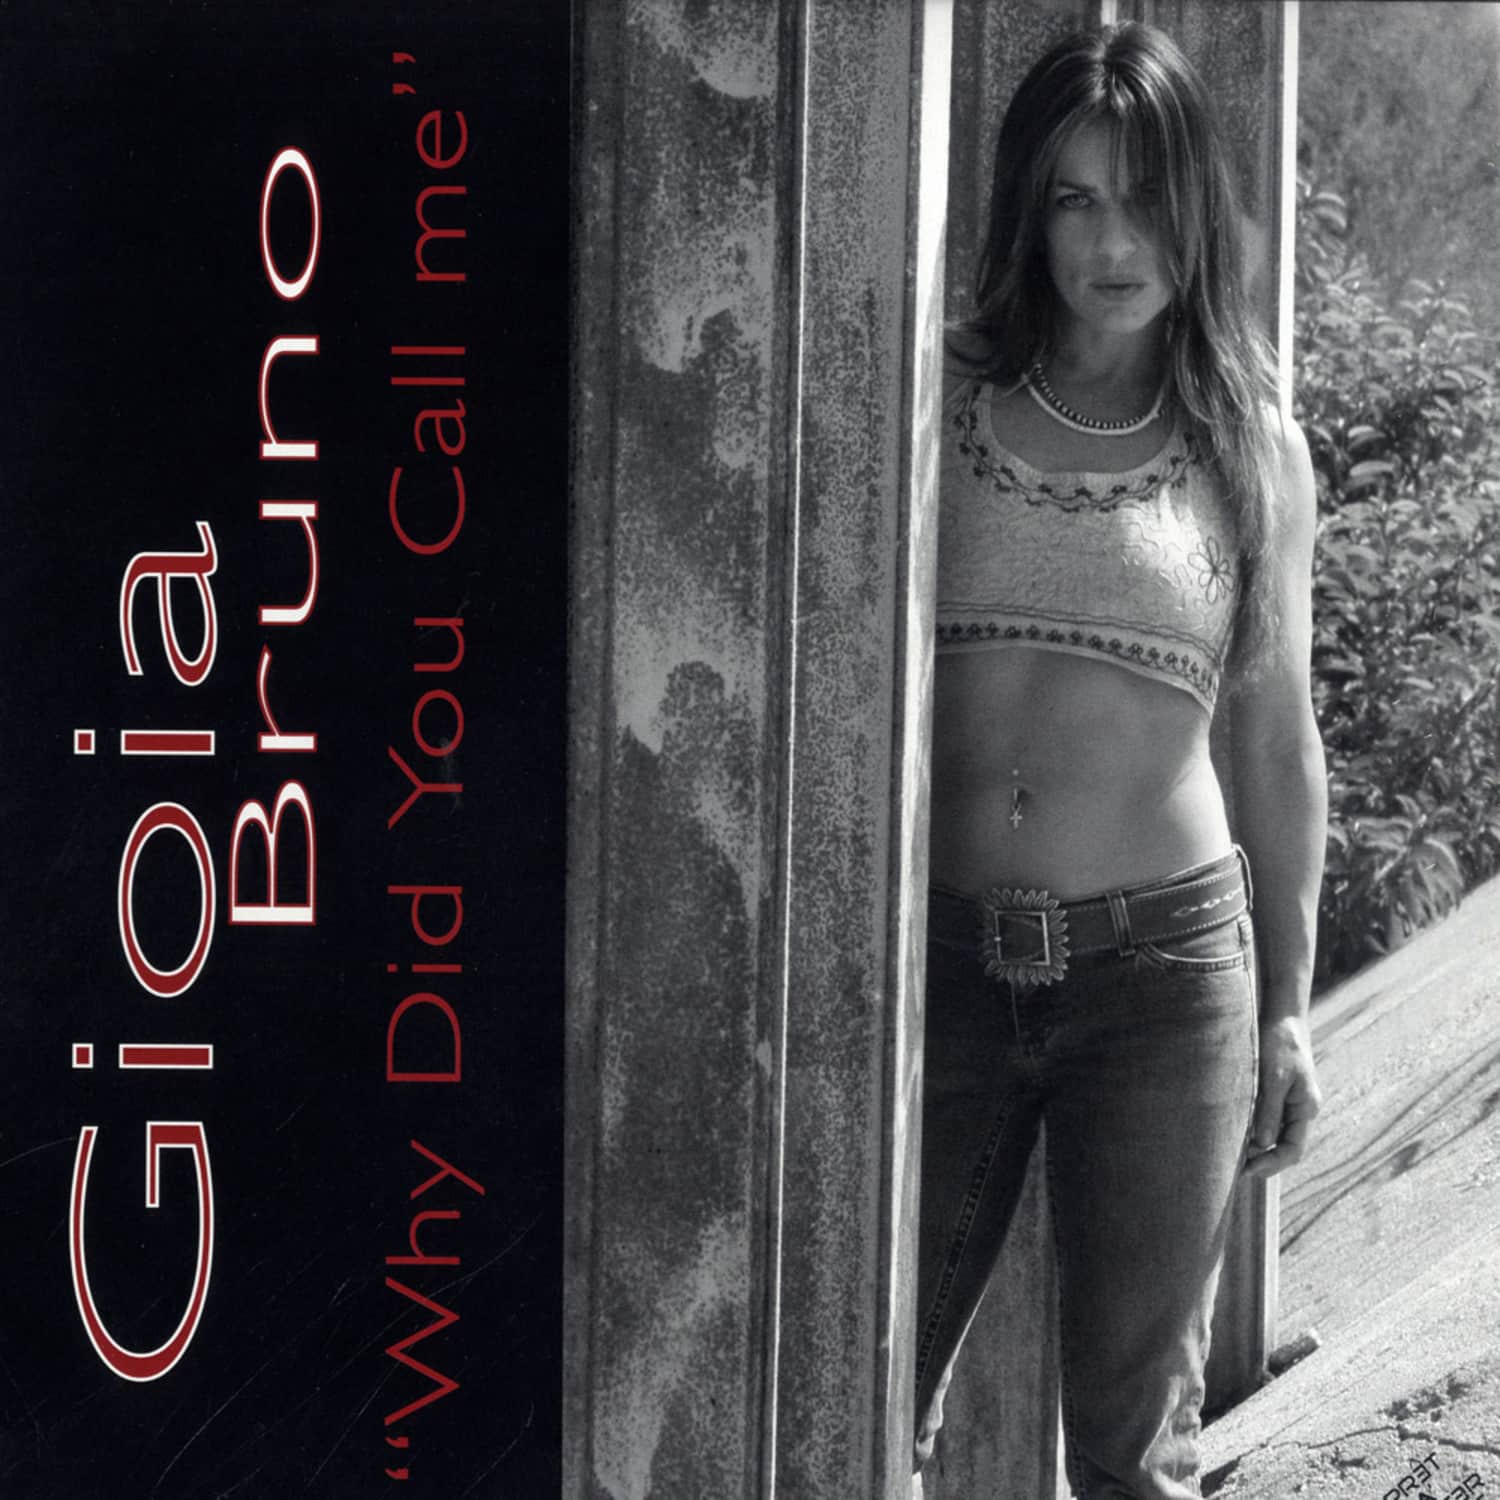 Gioia Bruno - WHY DID YOU CALL ME